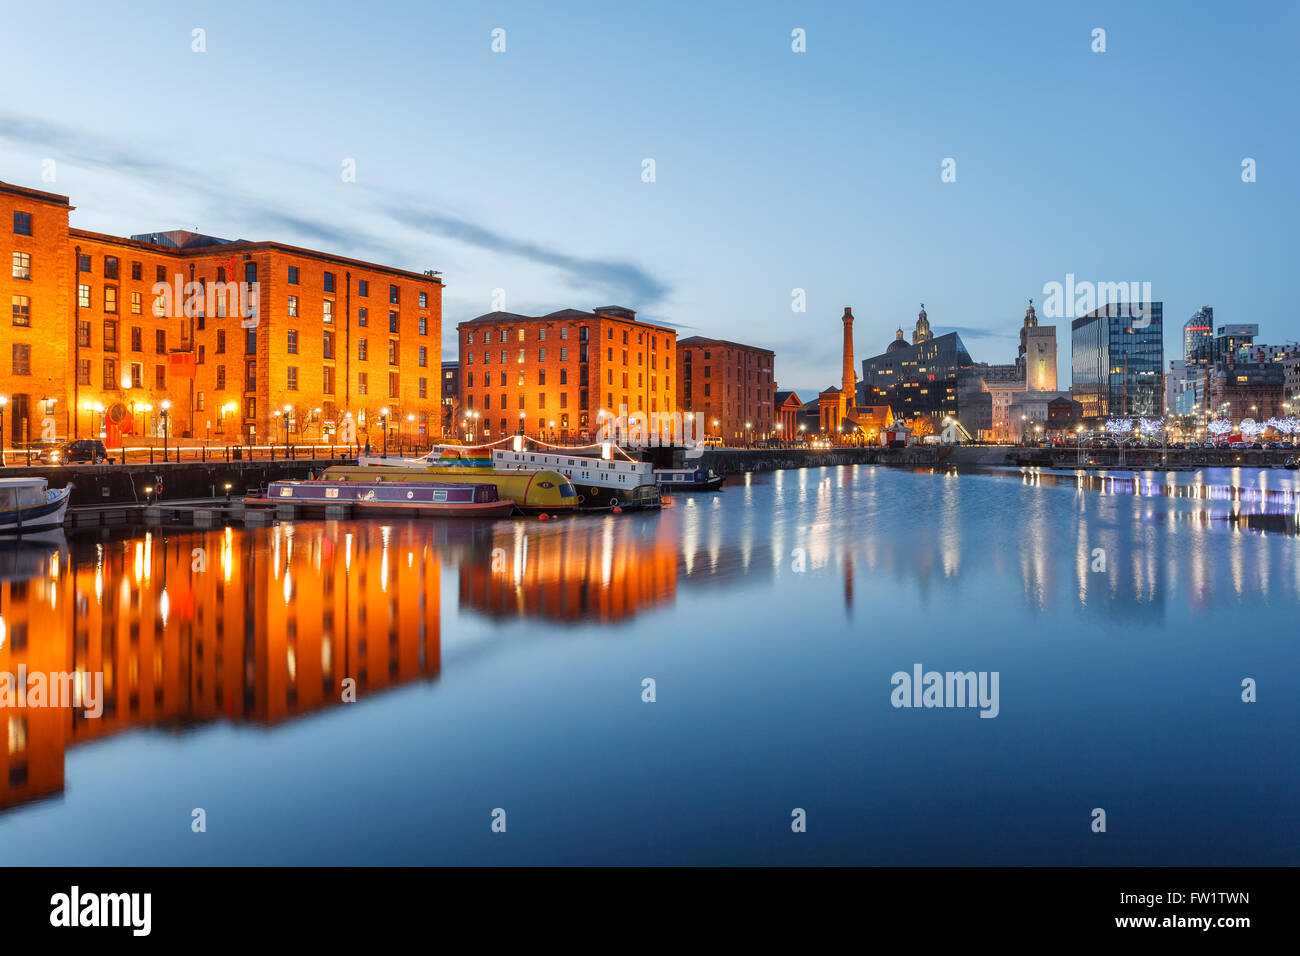 Réflexions d'anciens bâtiments à l'Albert Dock, Liverpool waterfront, au Royaume-Uni. Banque D'Images